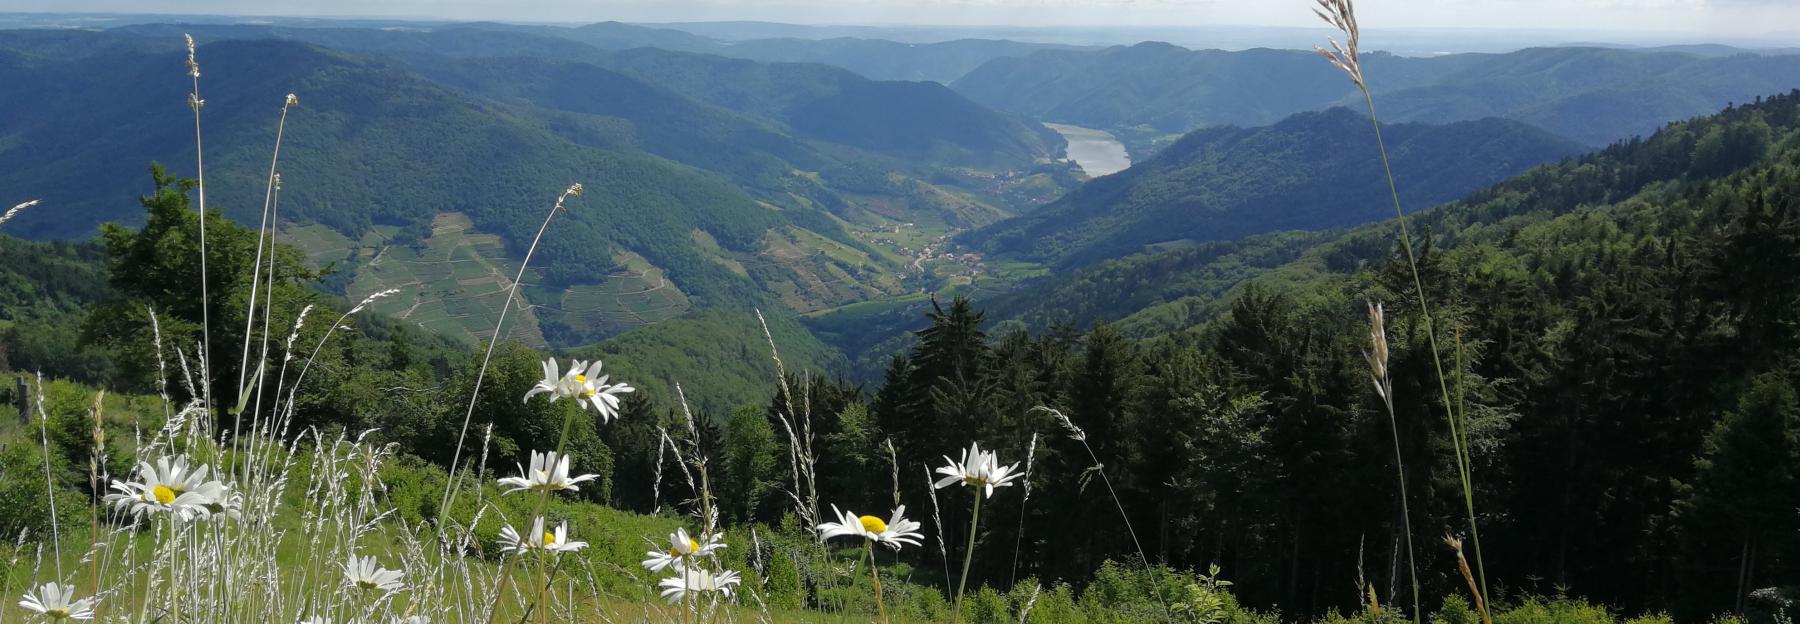 Ausblick ins Tal der Wachau, von einer Hügelkuppe mit blühenden Margeriten